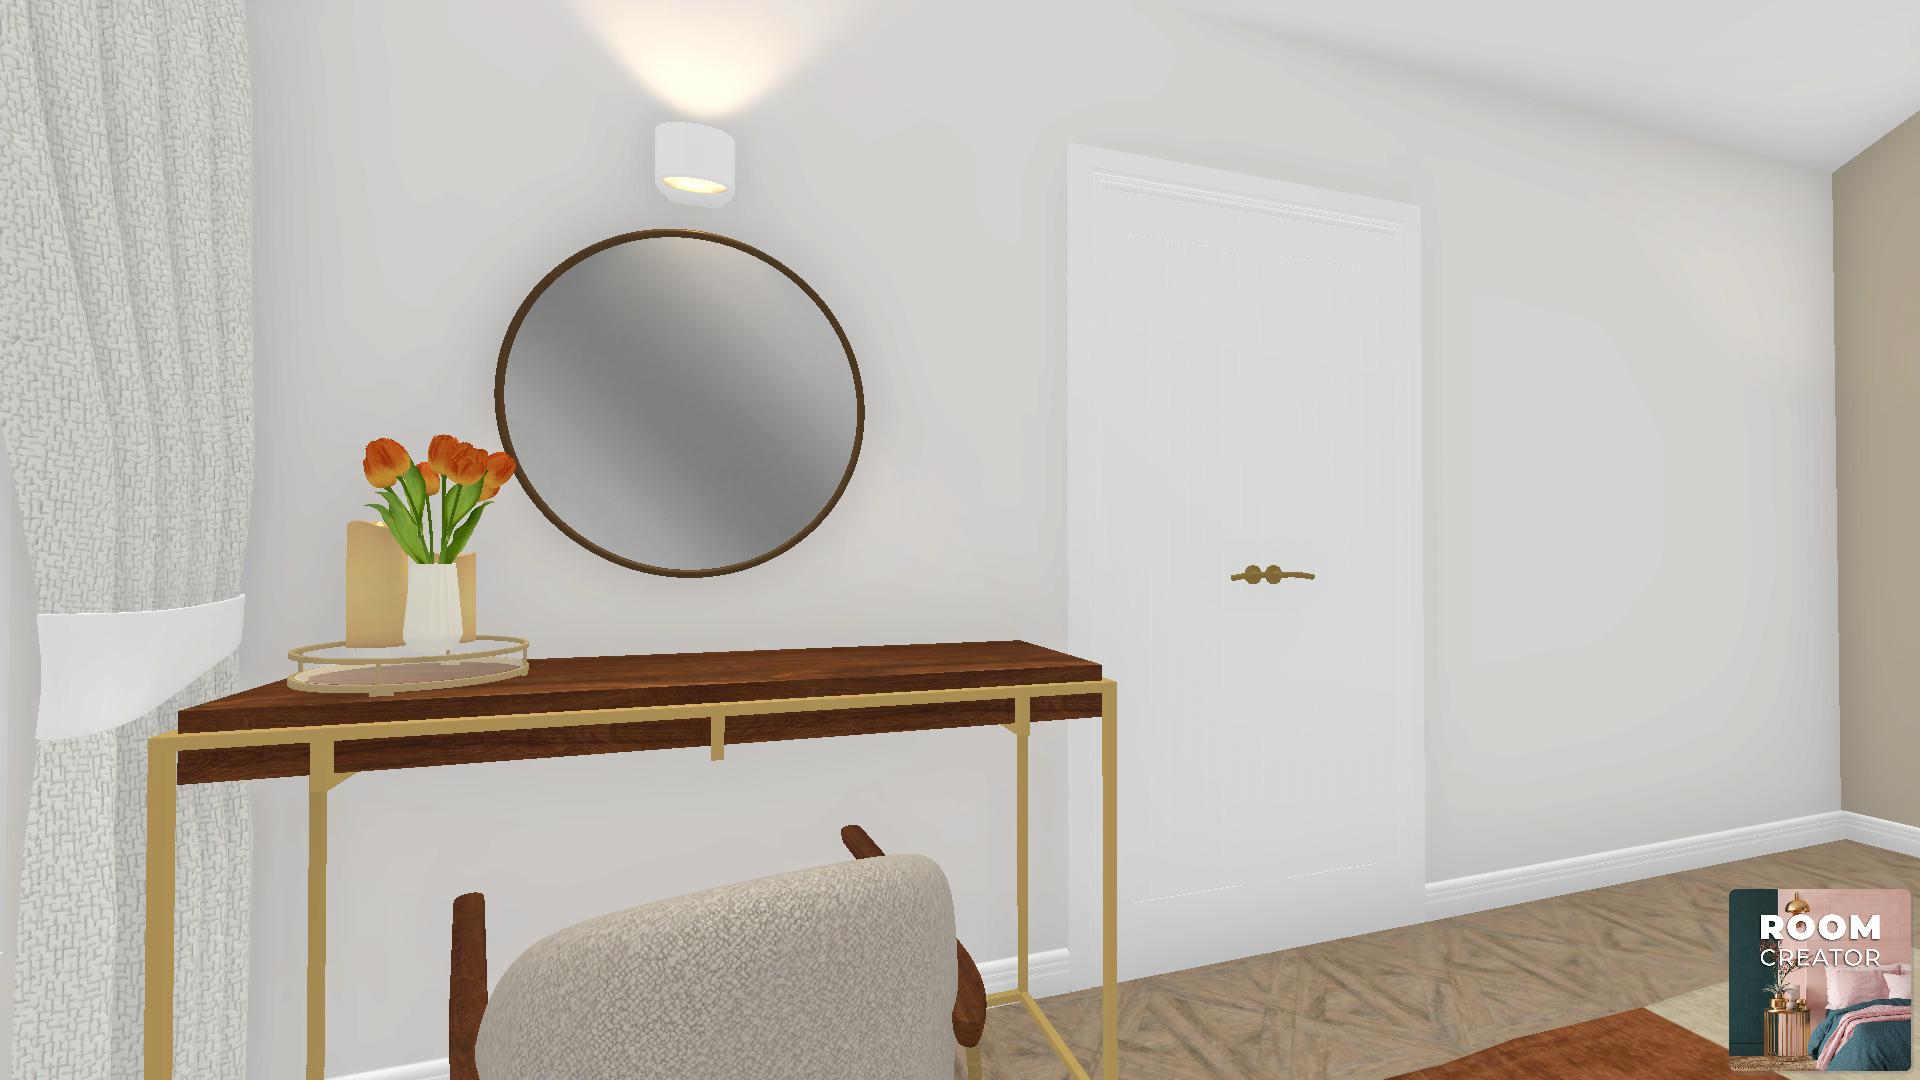 New bedroom design in app